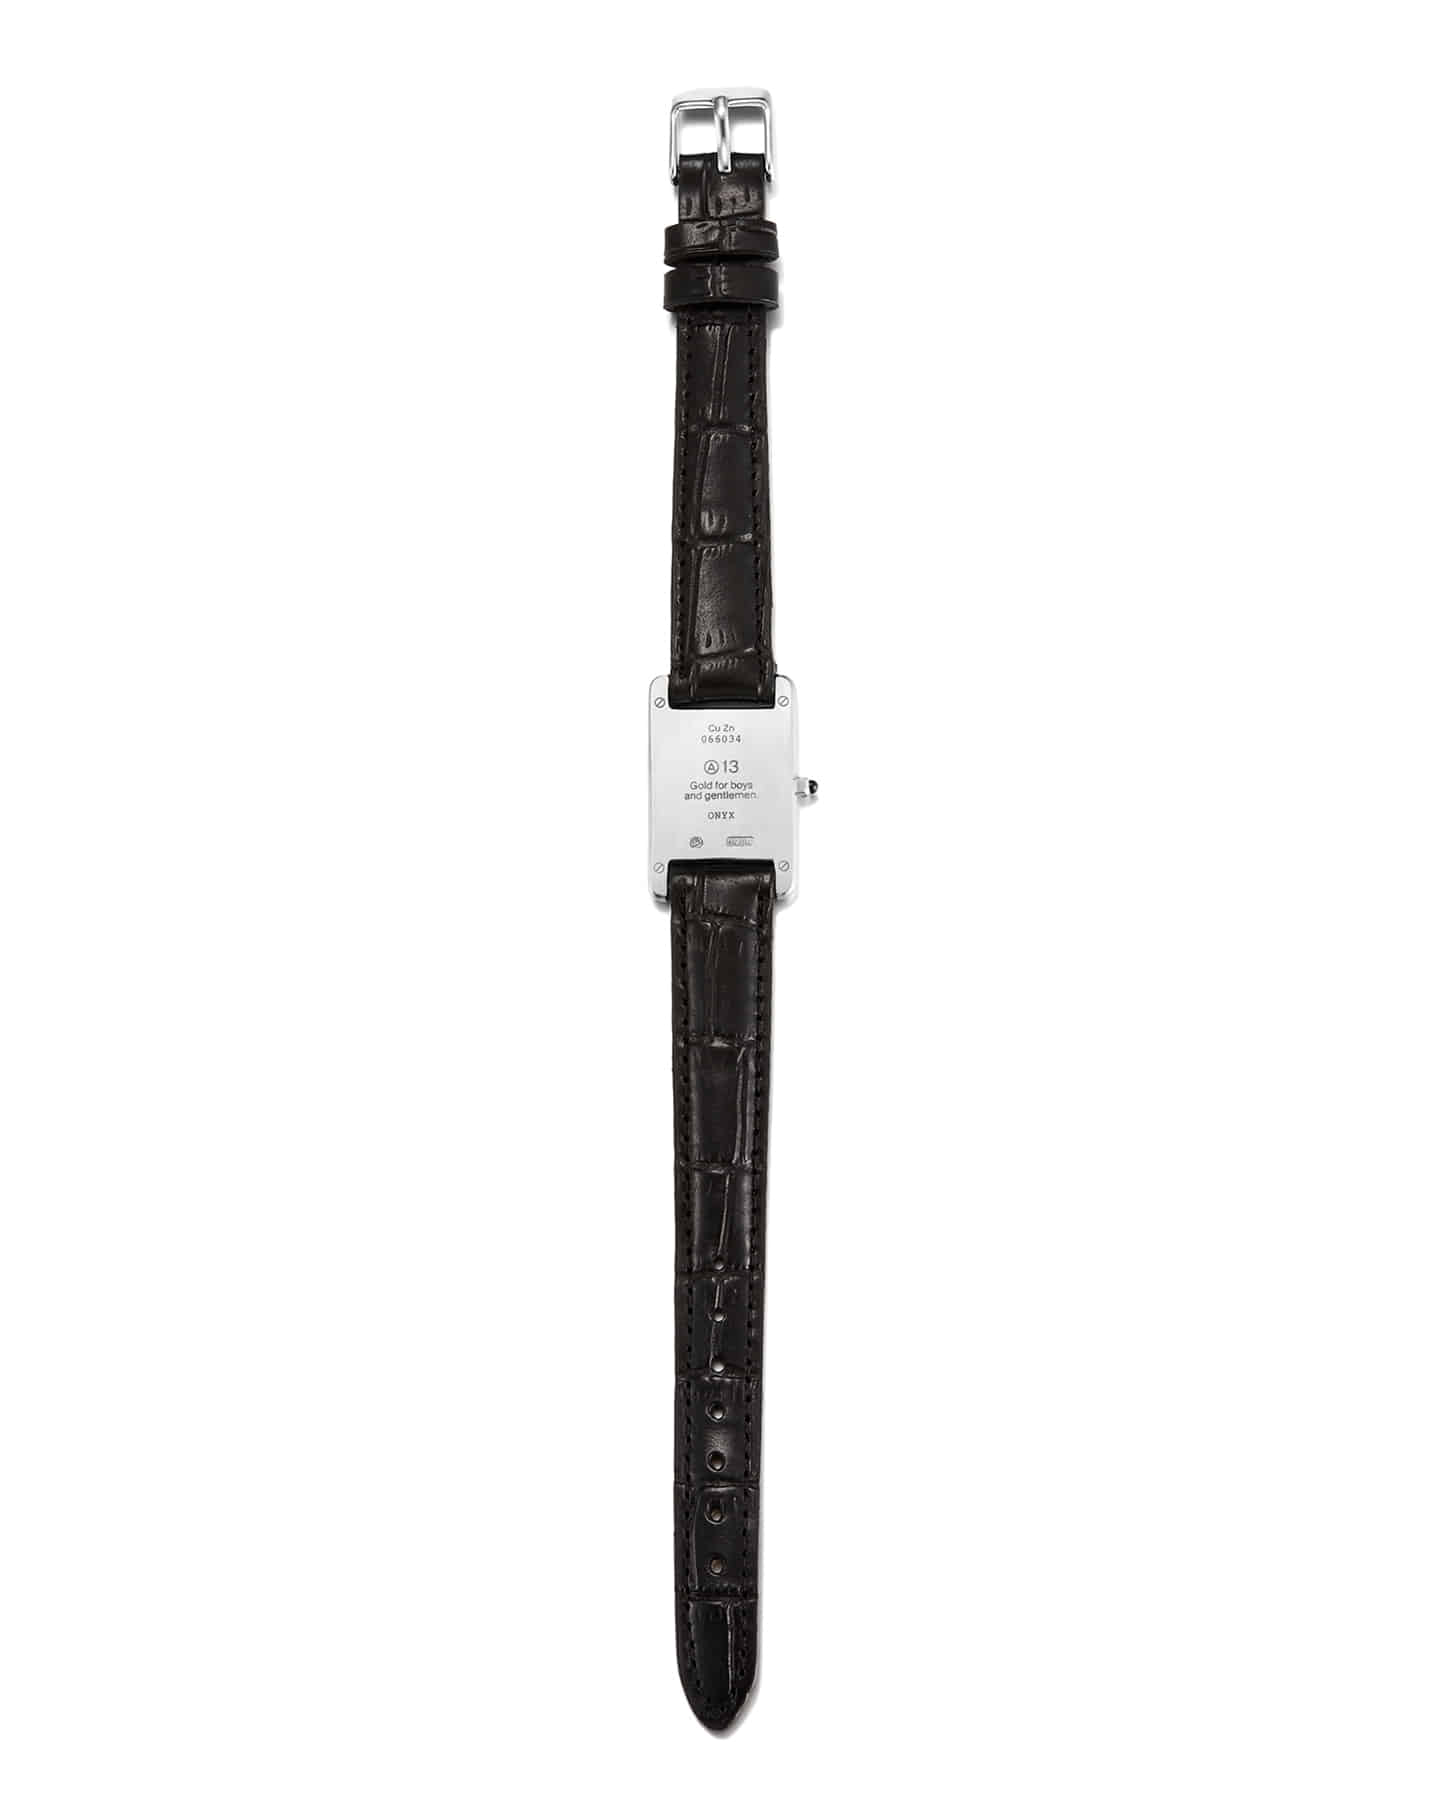 Shipped in late November] A13 Watch Bracelet-Black – WooStore